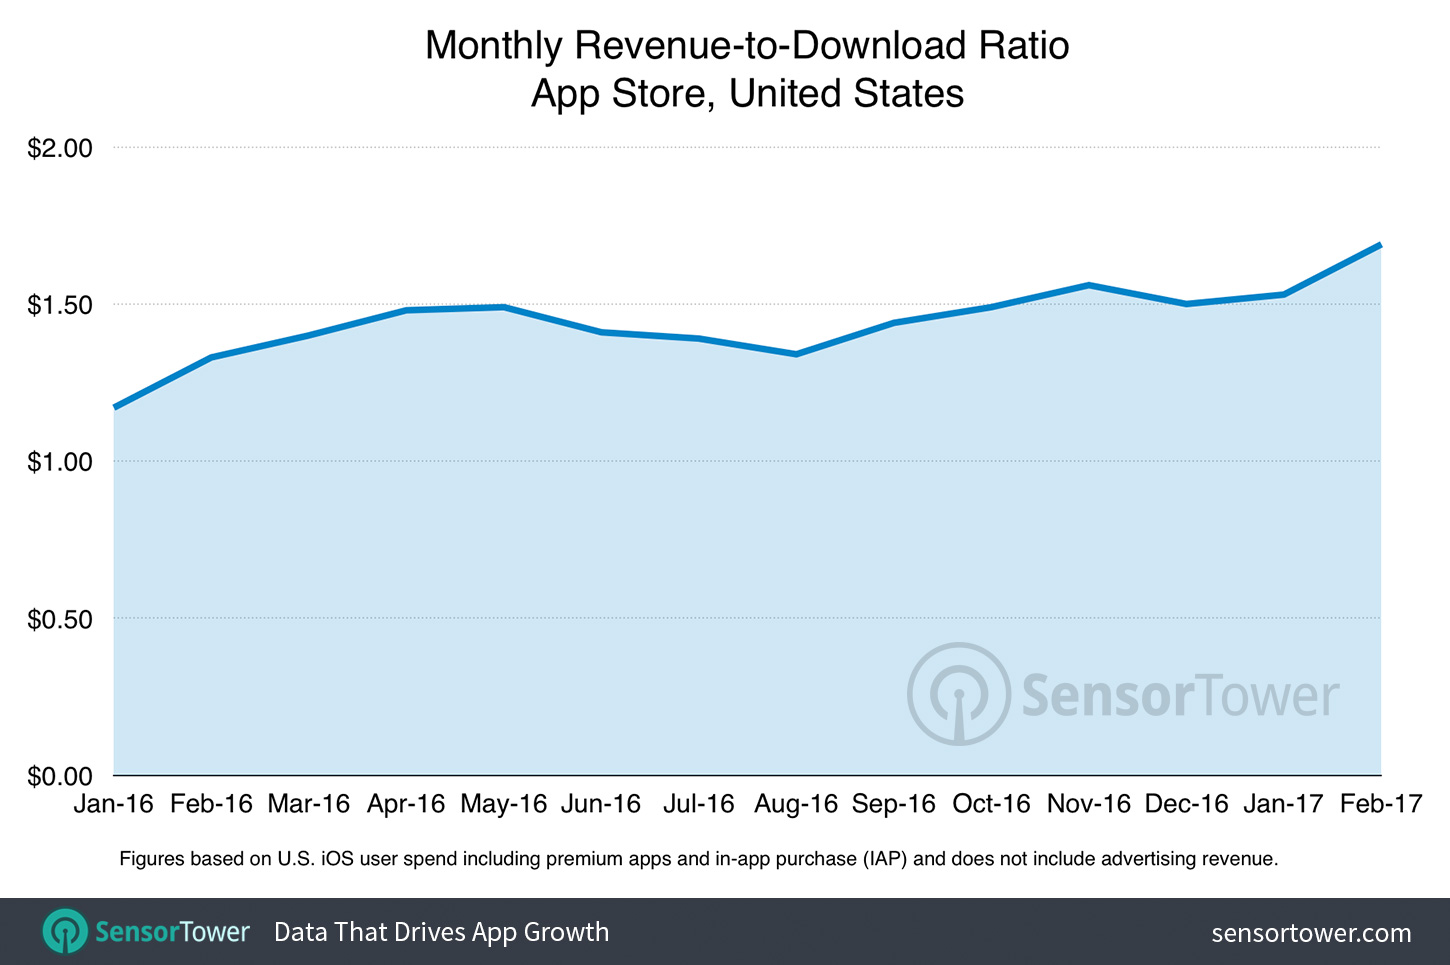 Monthly U.S. App Store gross revenue per download 2016